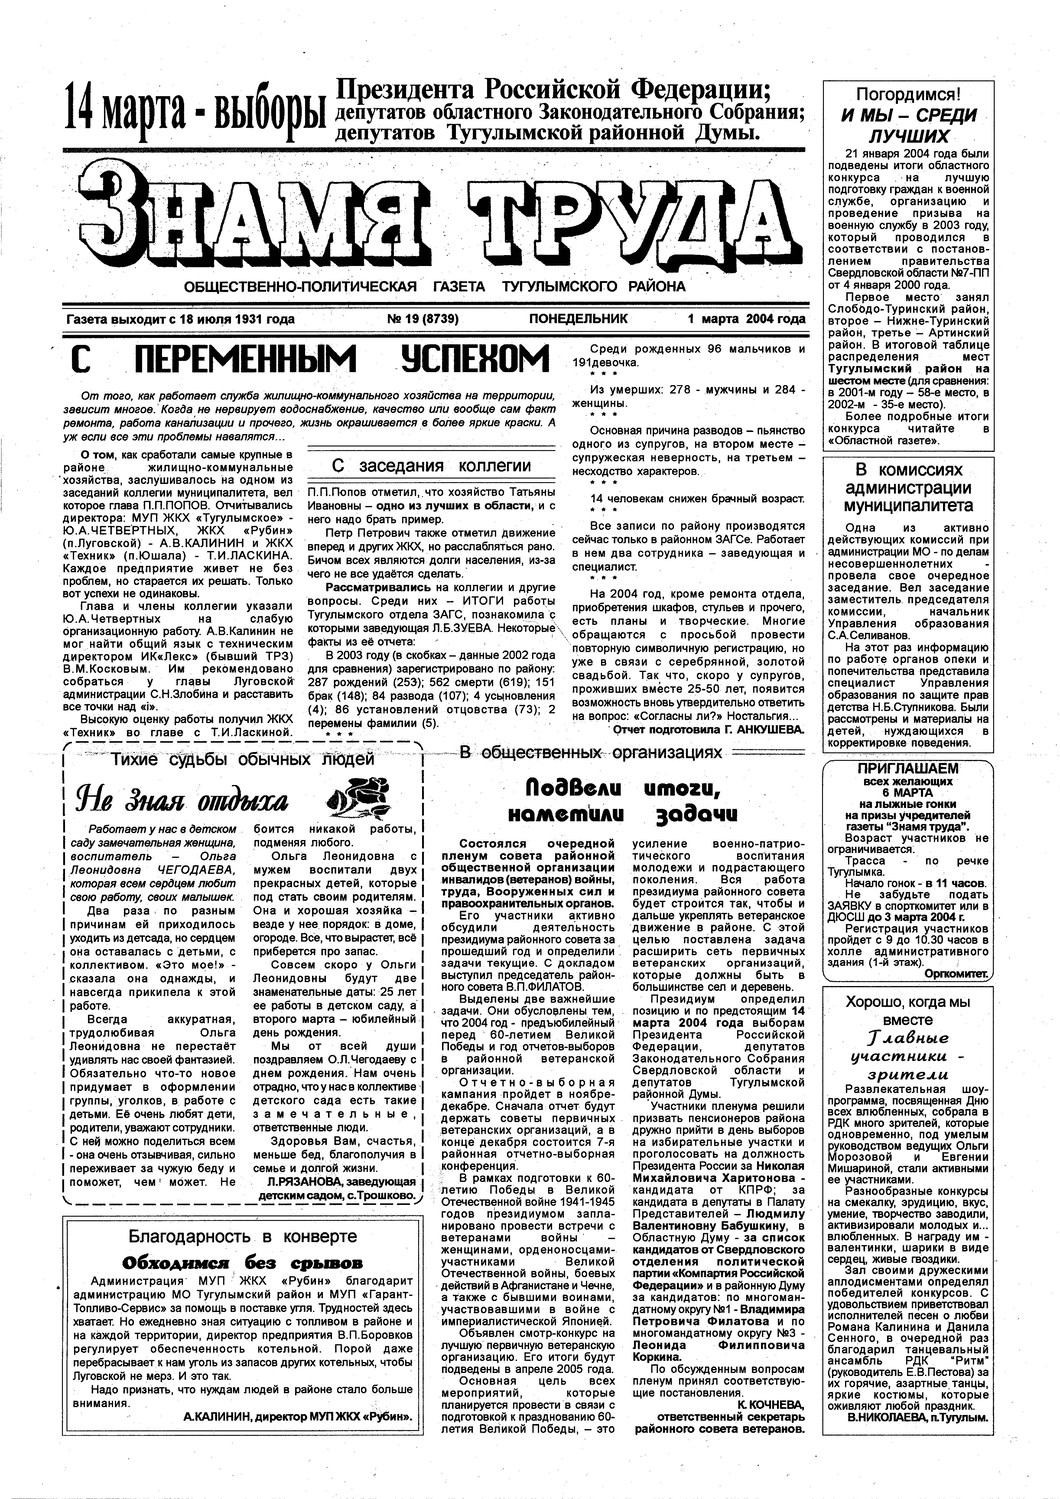 Знамя труда №19 от 1 марта 2004г.